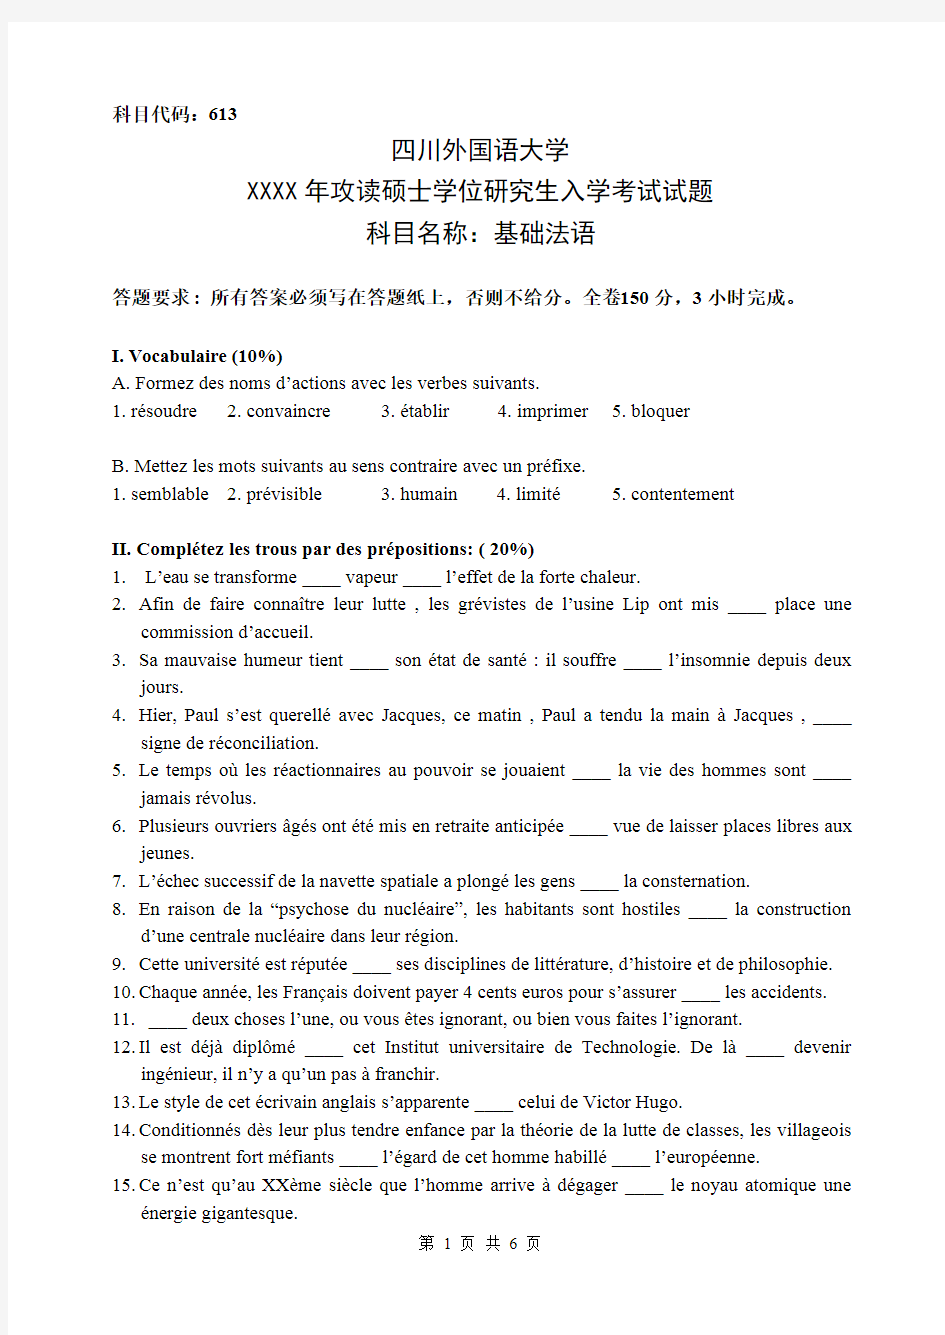 四川外国语大学研究生入学考试--613基础法语